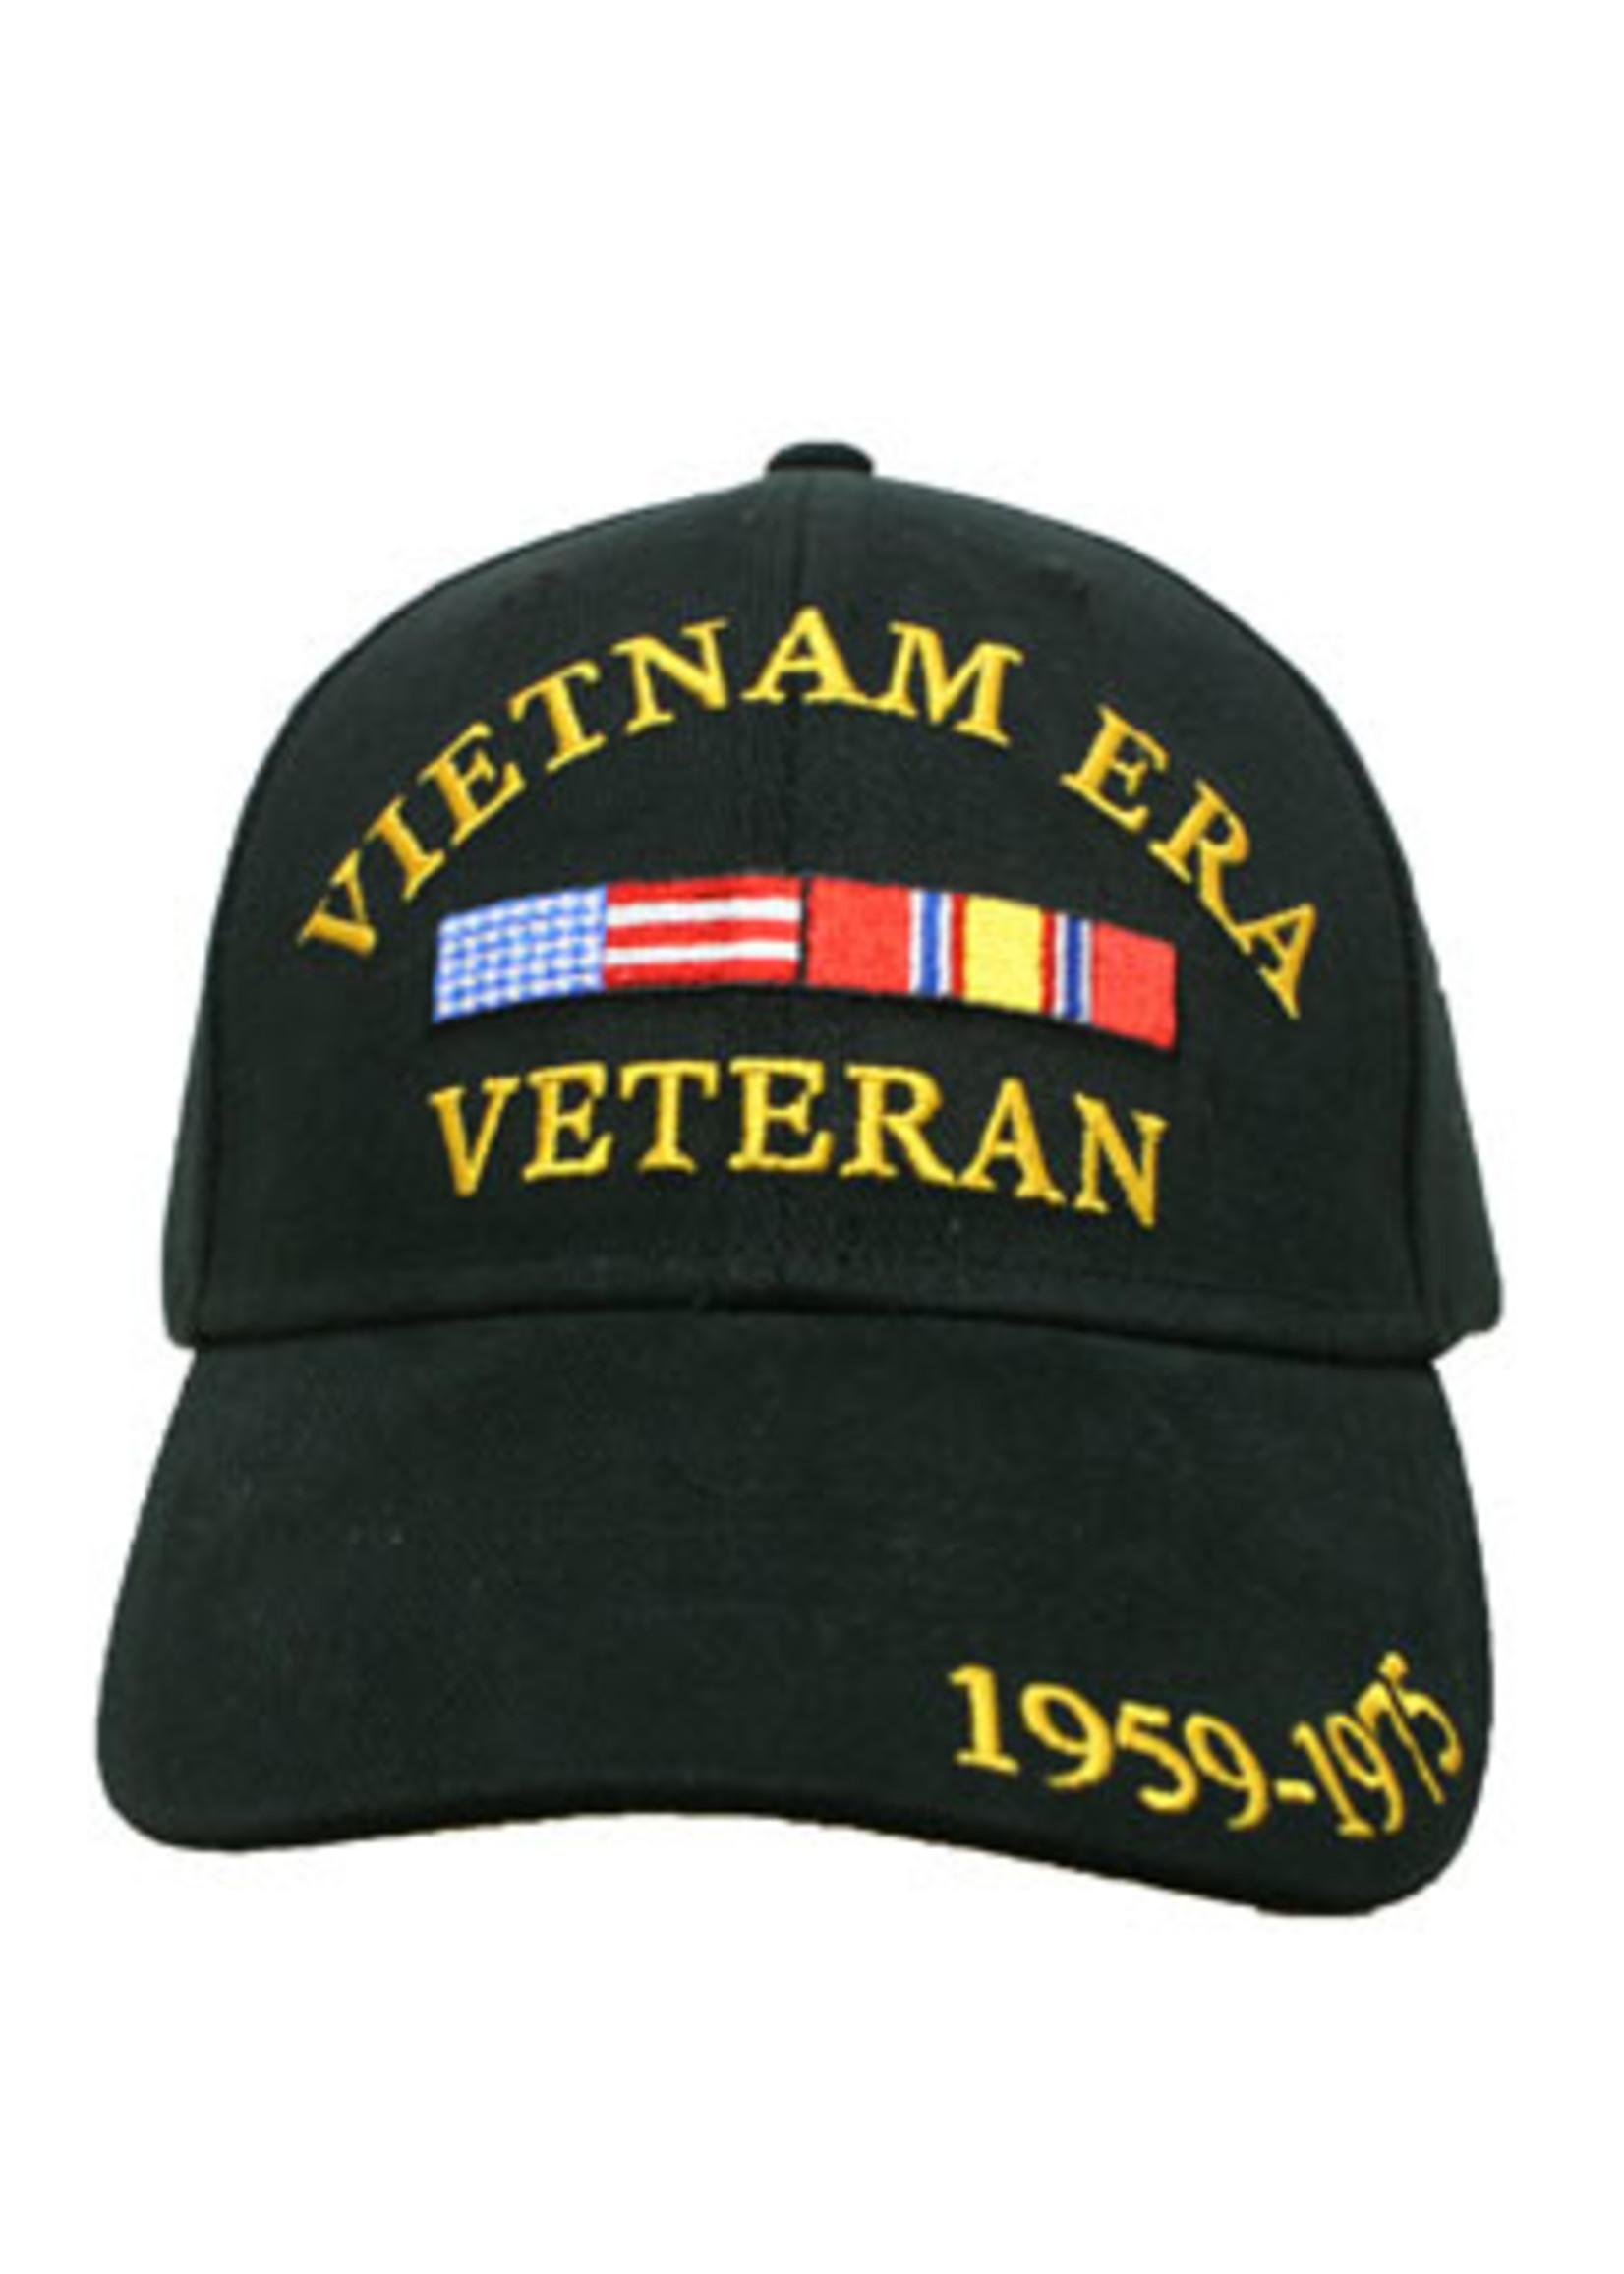 Eagle Emblems Cap Vietnam Era Veteran